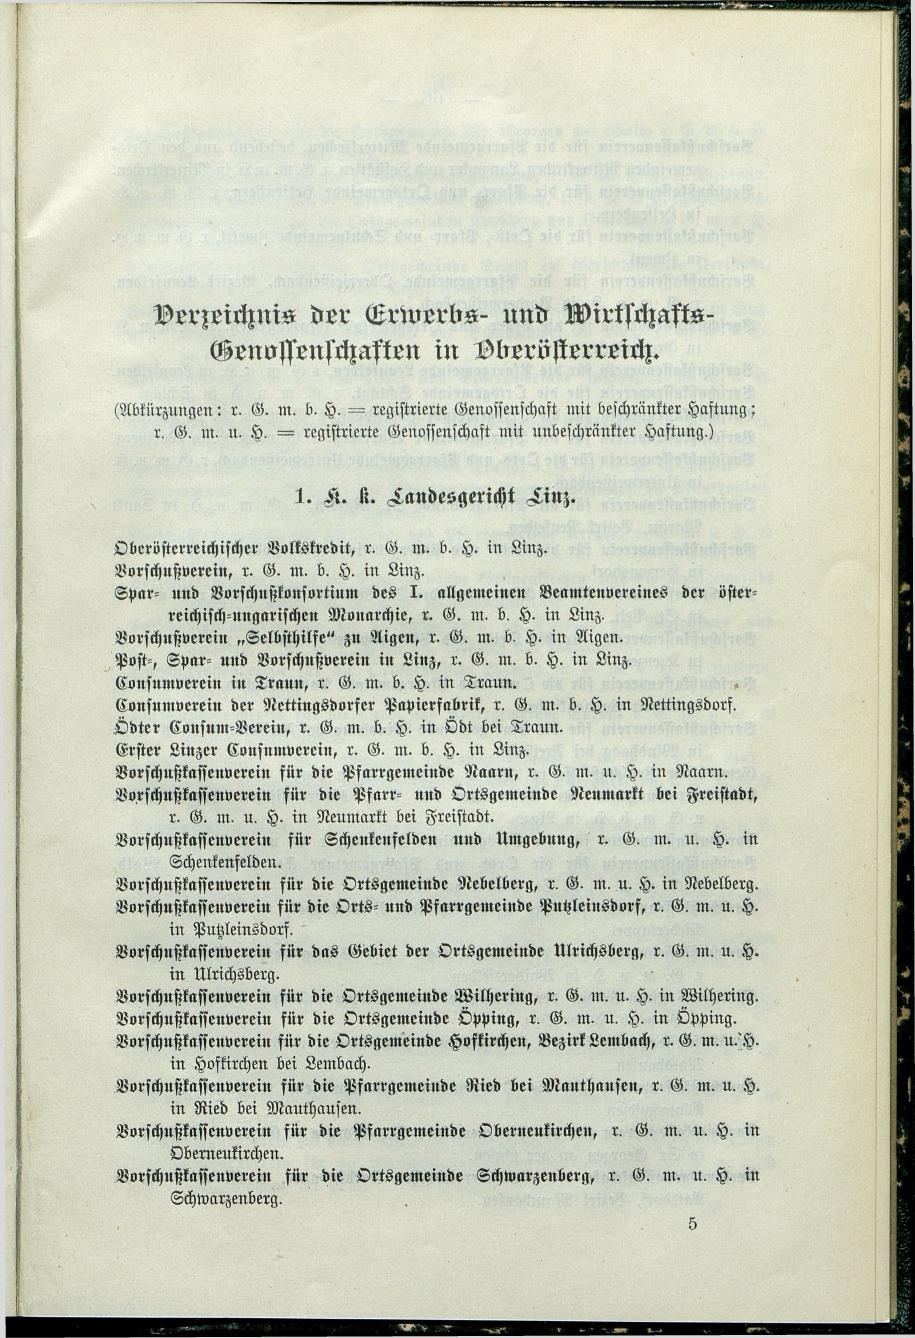 Verzeichnis der protokollierten Firmen und Genossenschaften in Oberösterreich 1908 - Seite 69